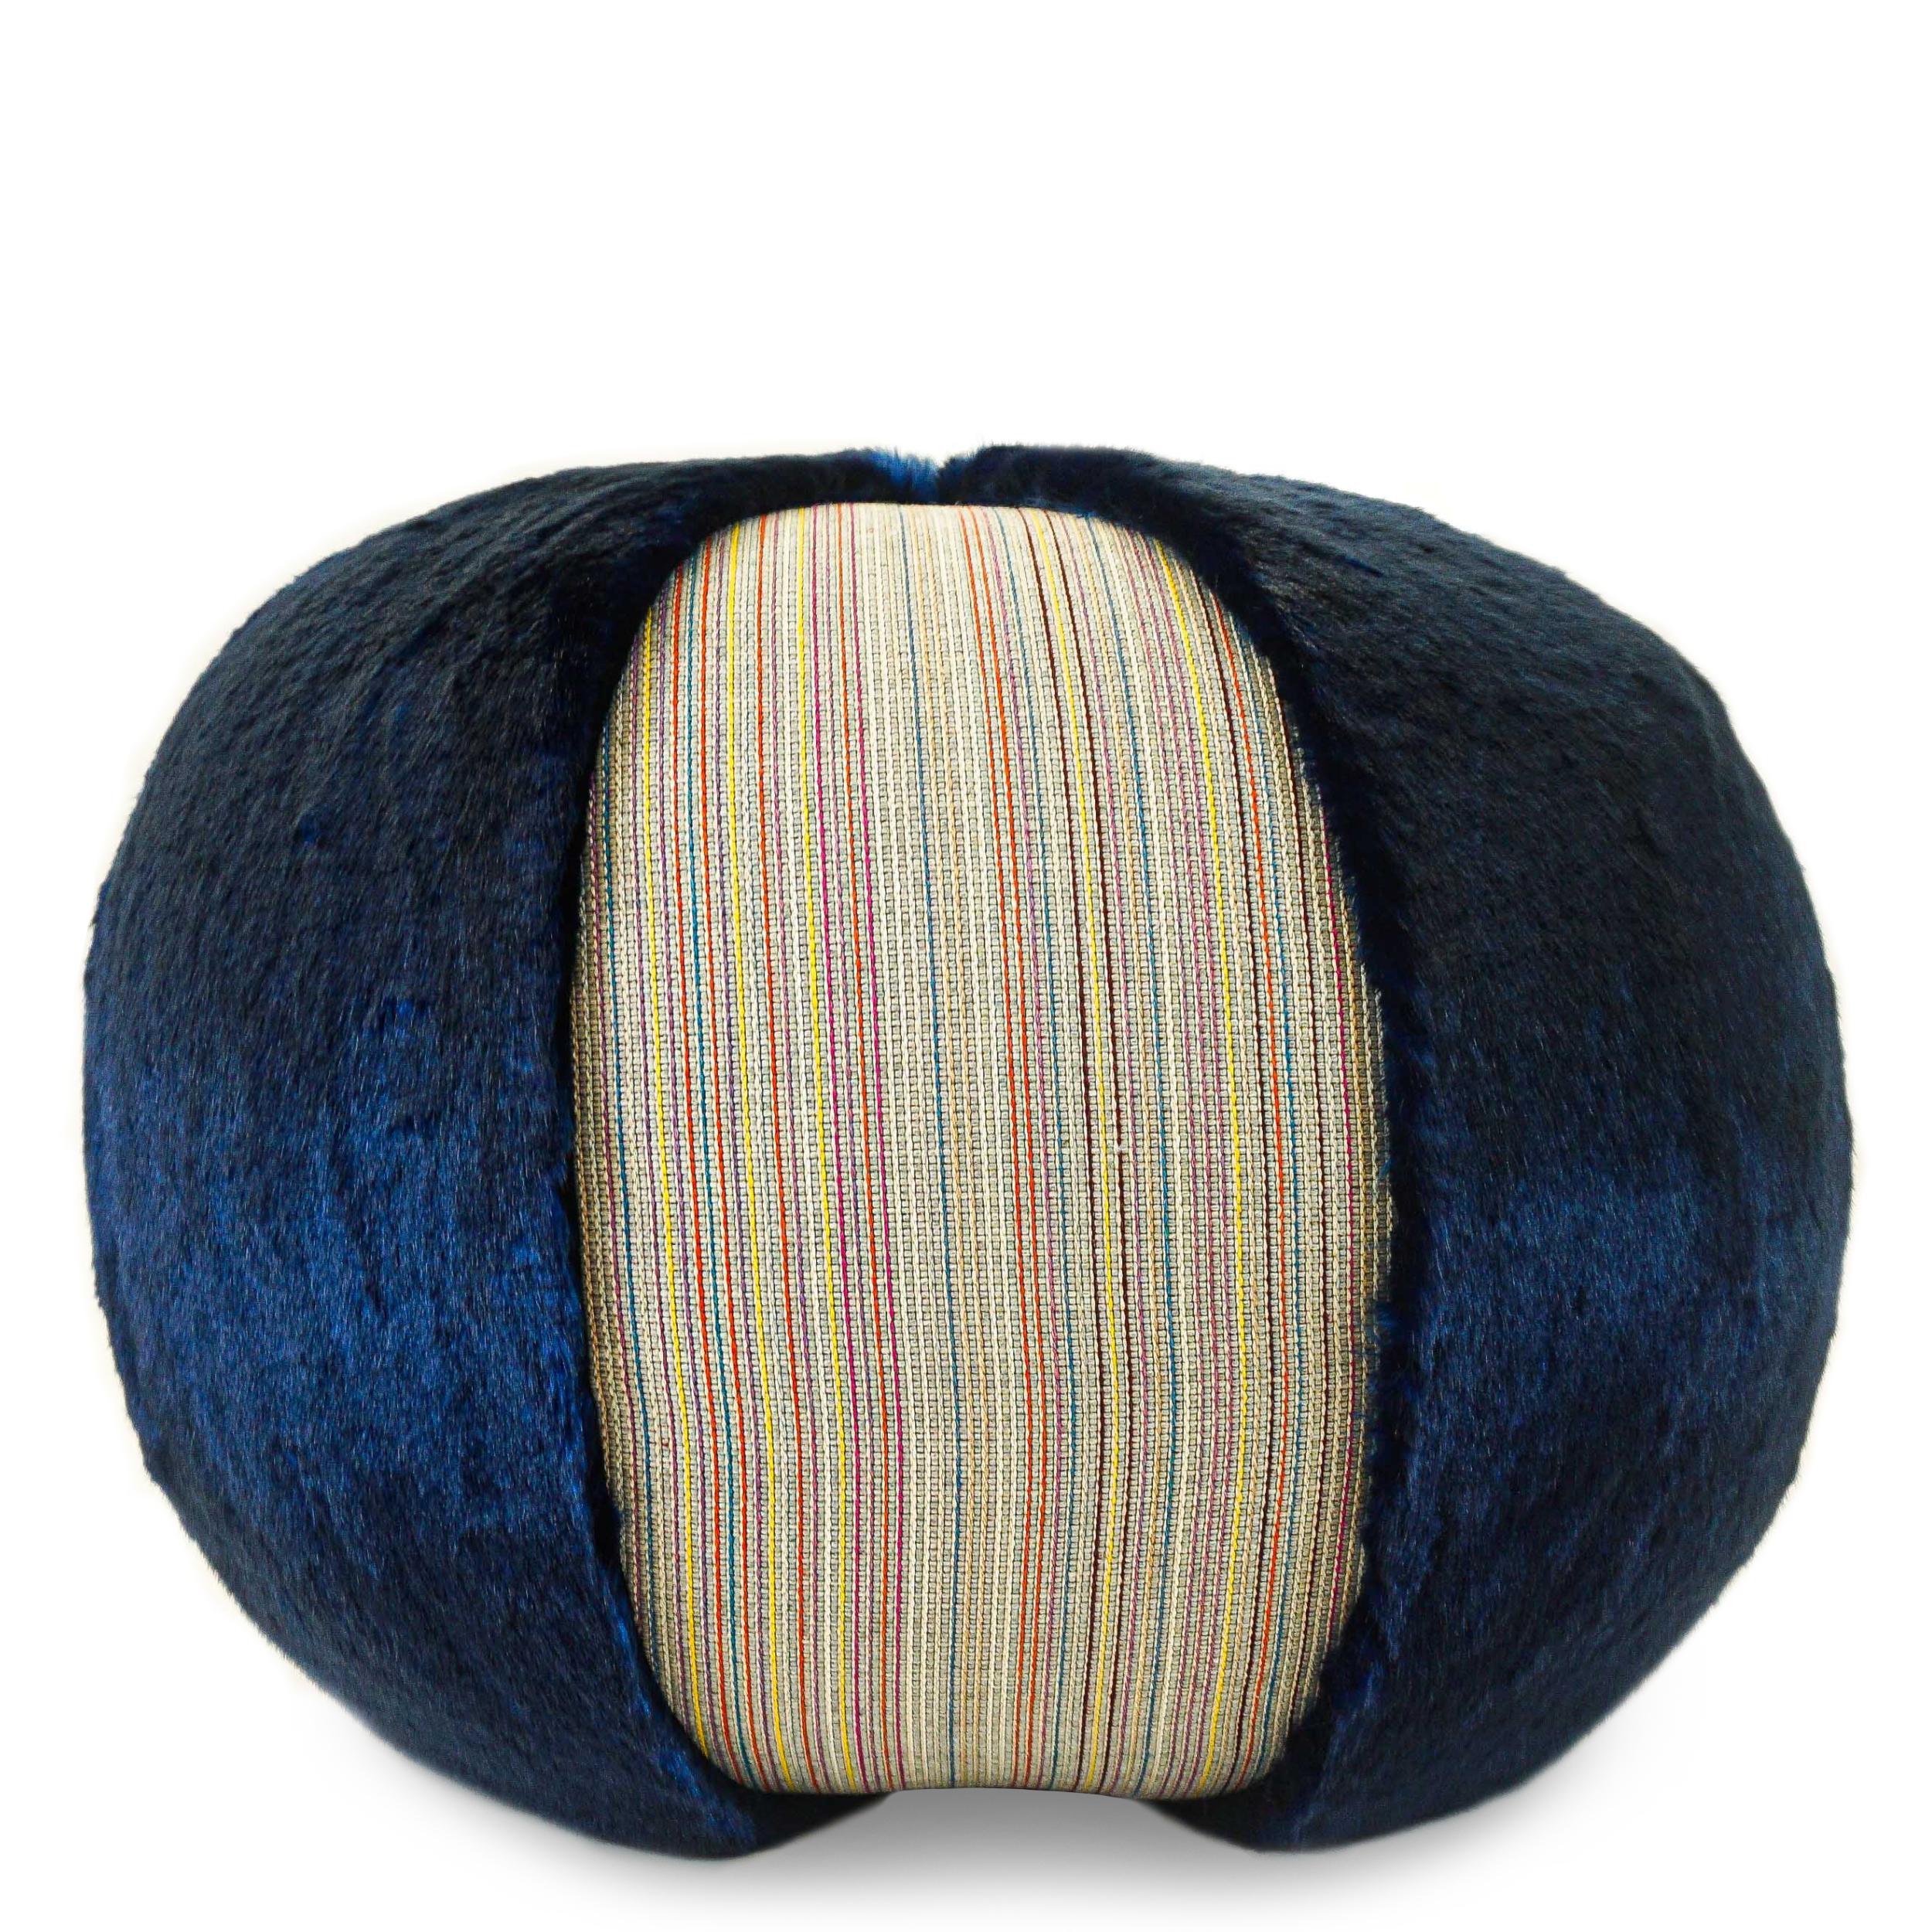 Colorful Stripe Pouf/Ottoman with Vibrant Blue Faux Fur For Sale 5